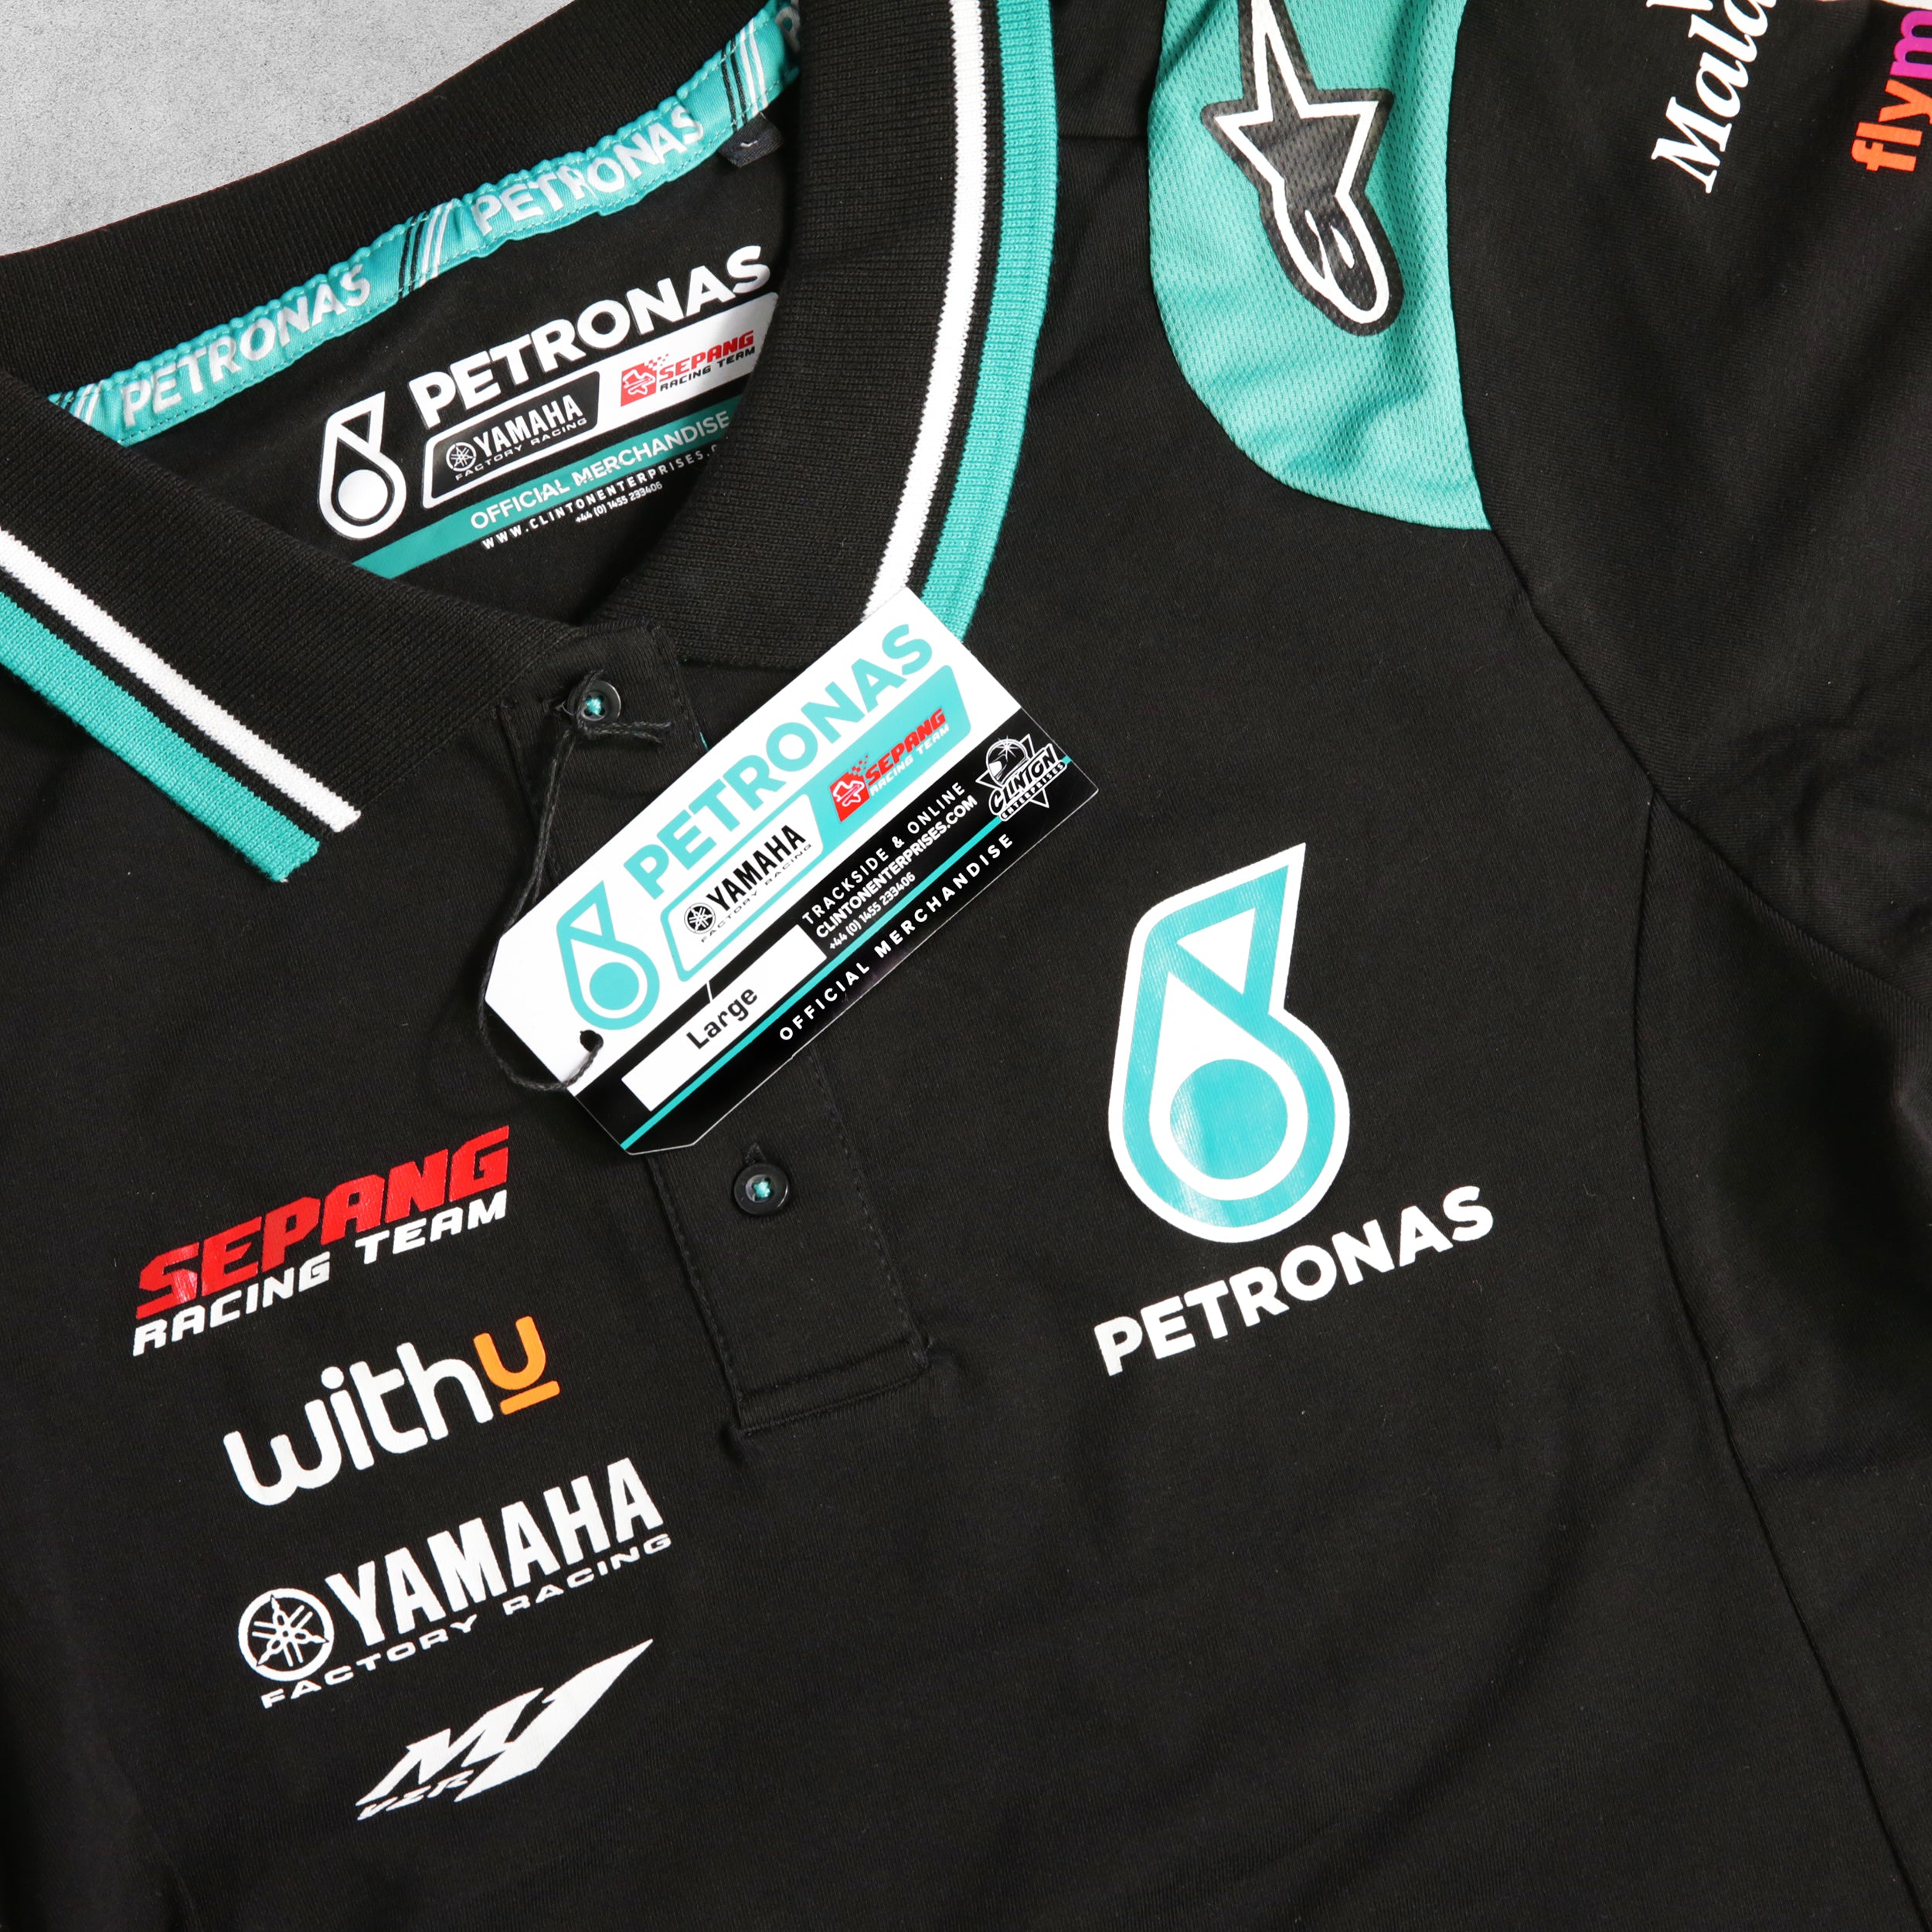 Official Petronas Yamaha Racing Women's Polo Shirt